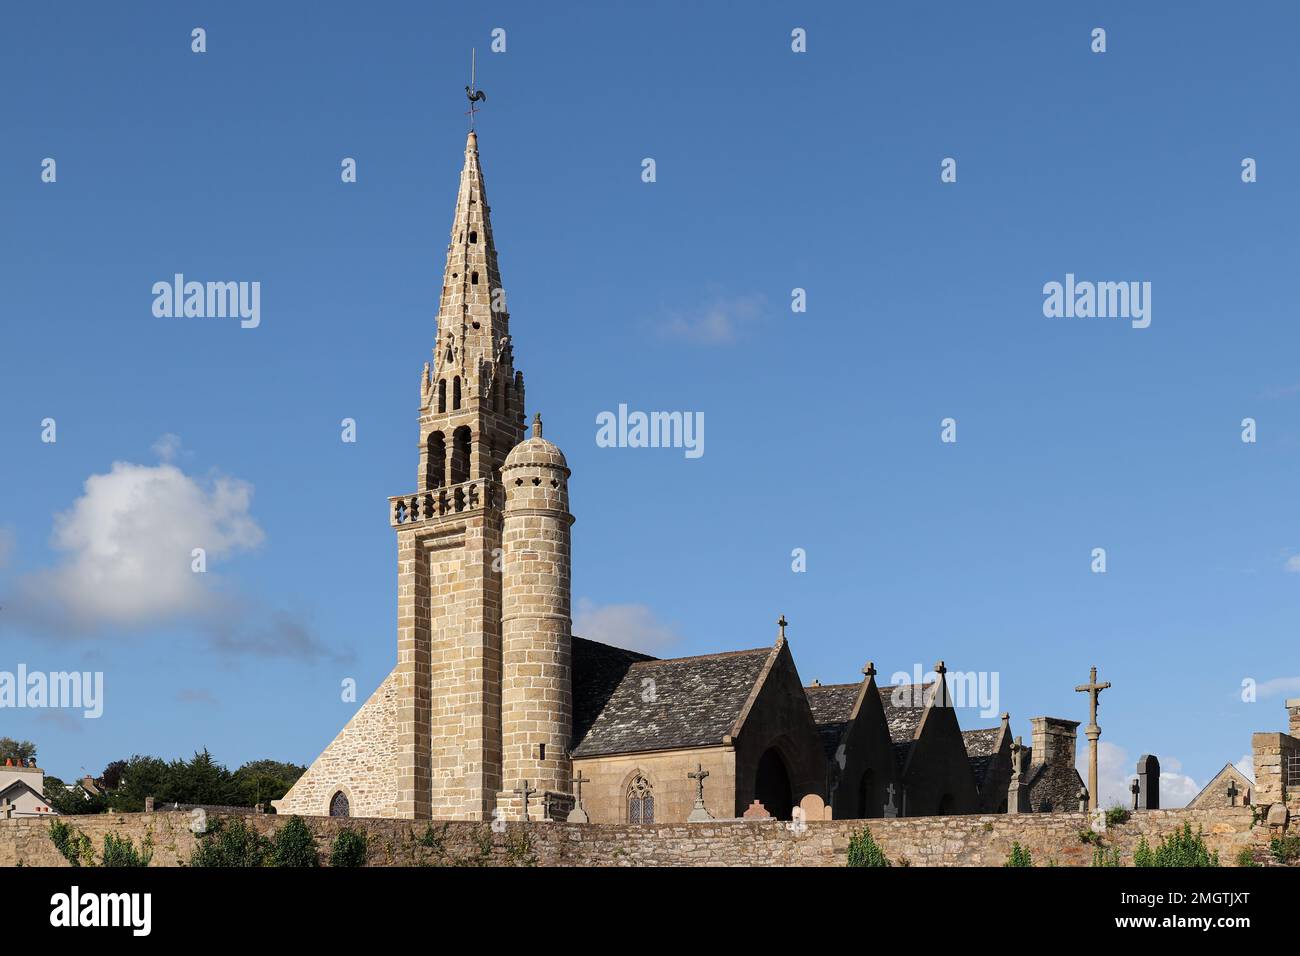 Eglise de Saint Michele, Saint-Michel-en-Greve, Bretagne, France Banque D'Images